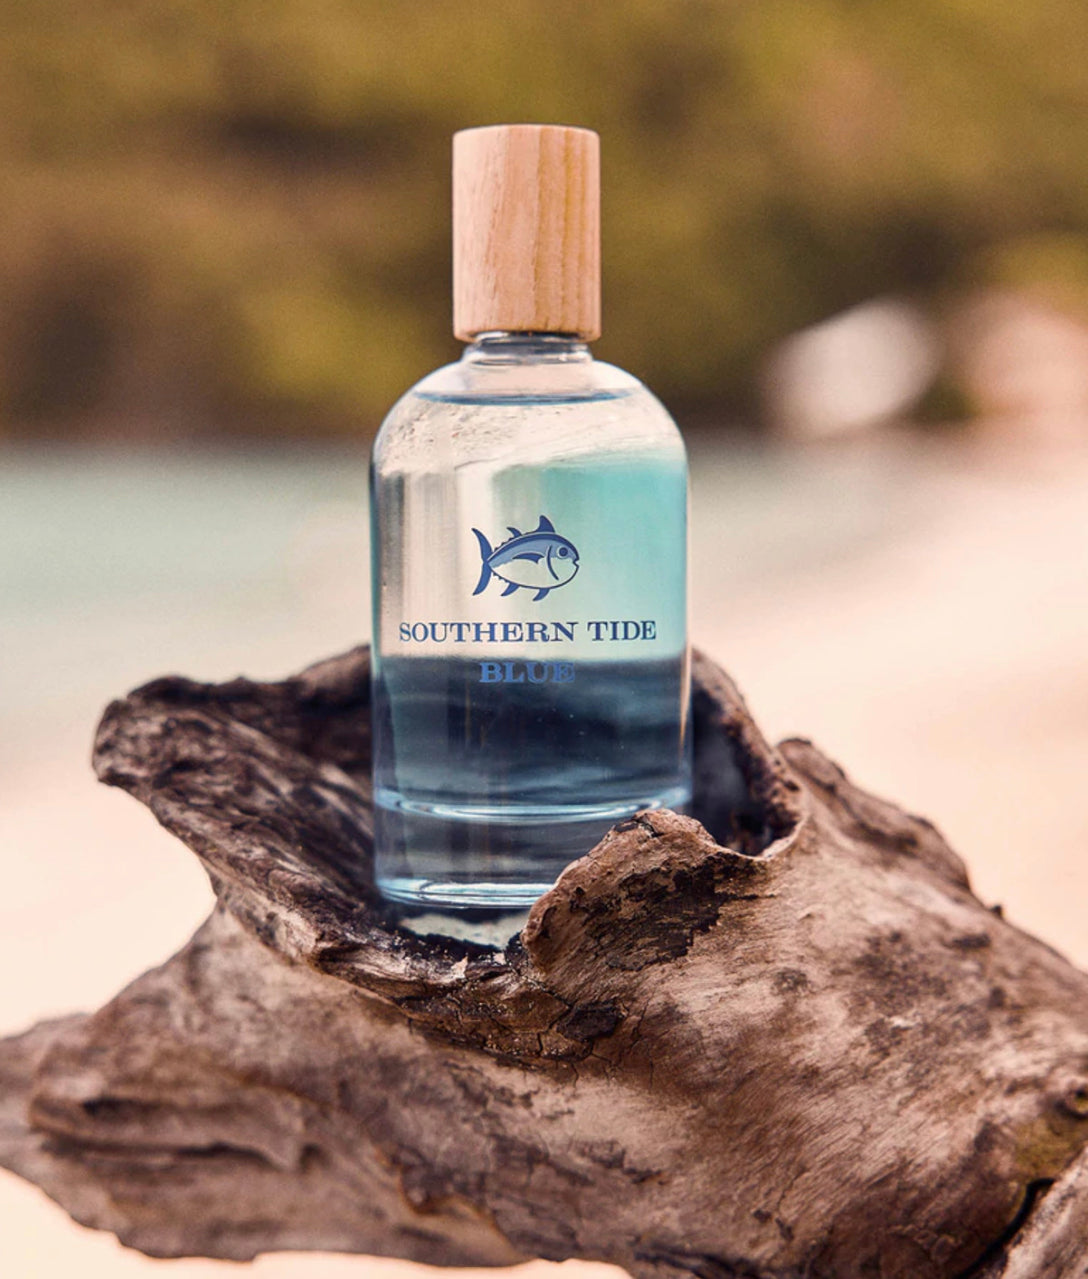 Southern Tide Blue Fragrance -3.4 fluid ounces